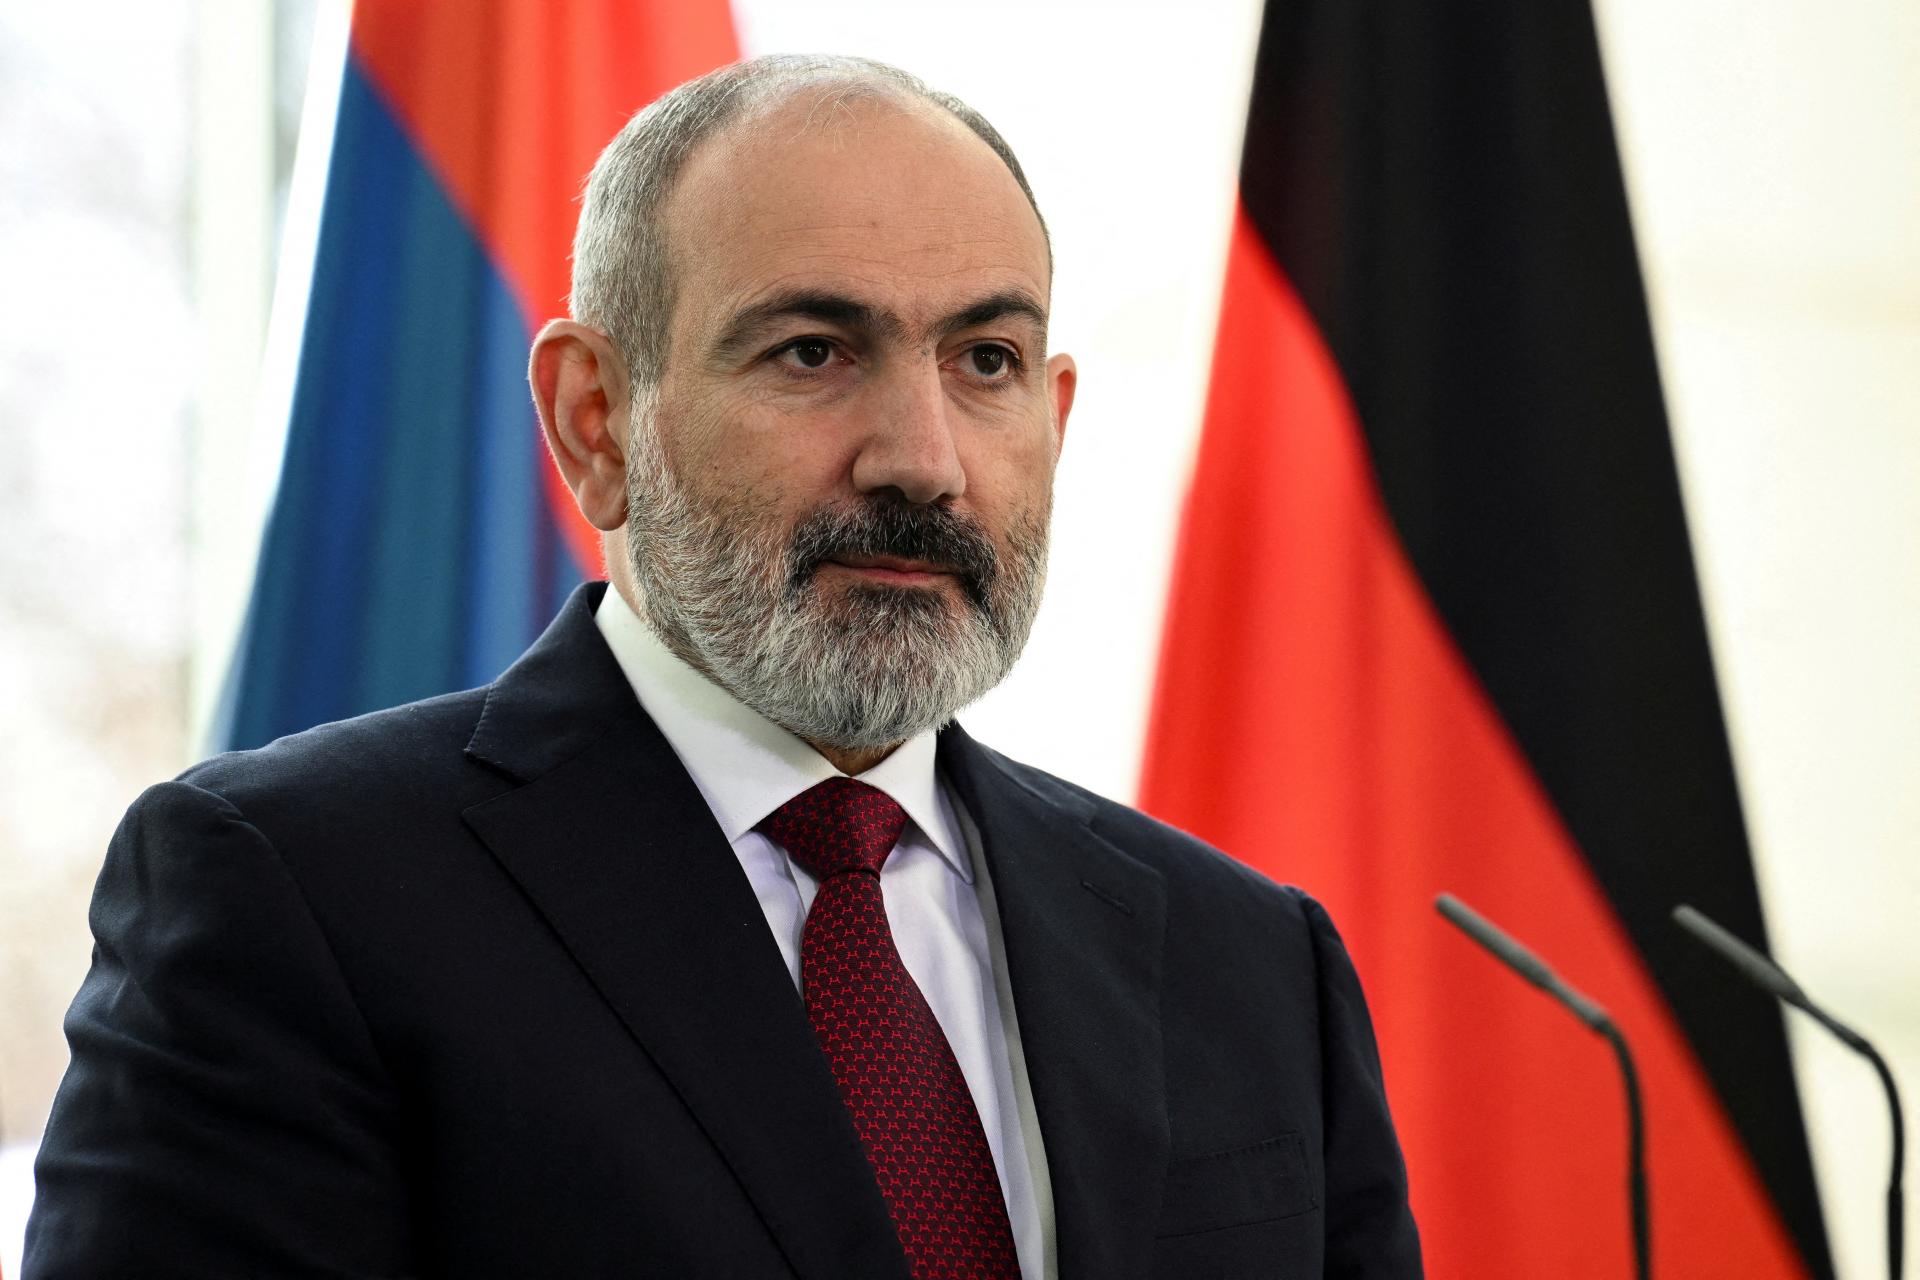 Blíži sa koniec veľkého sporu? Arménsko uzná Karabach za súčasť Azerbajdžanu, má však jednu podmienku